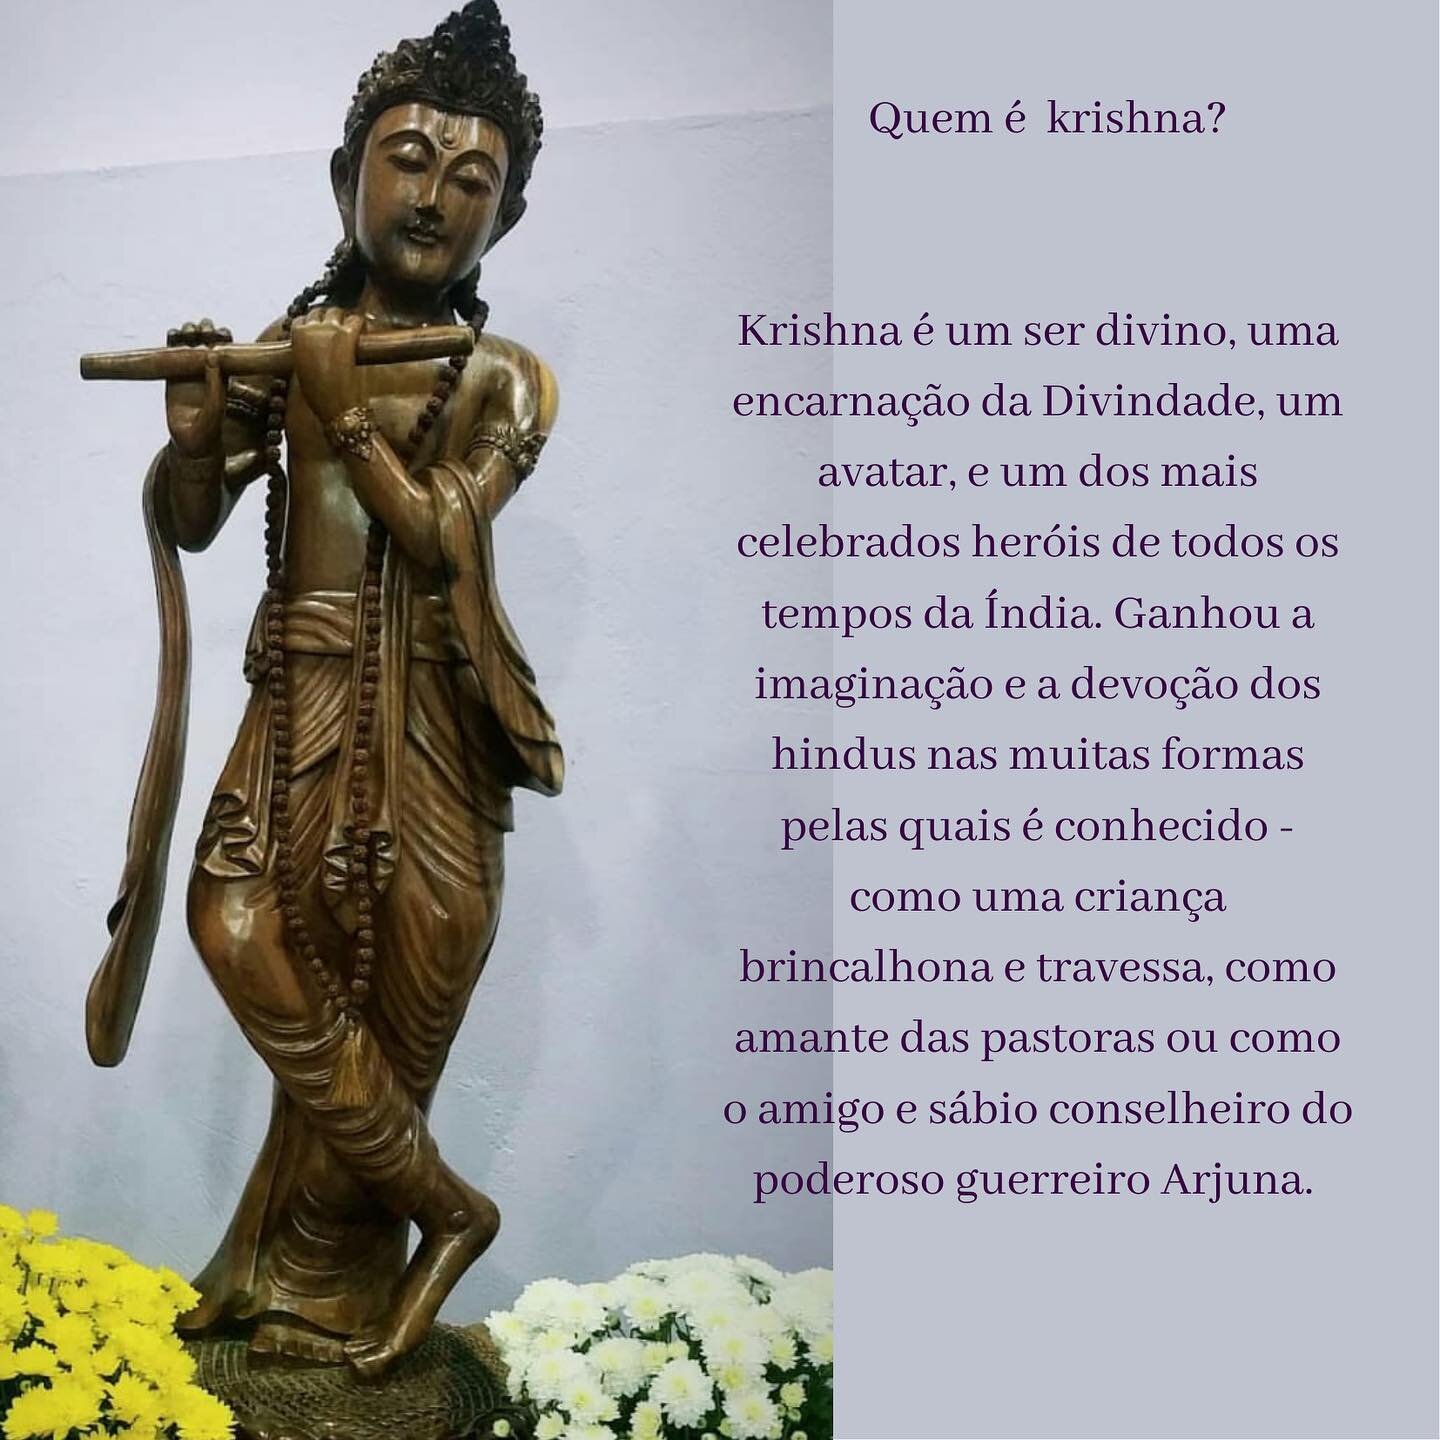 Vamos conhecer um pouco sobre o Senhor Krishna!
 

#krishna #chamavioleta #bajans #mestresascensos